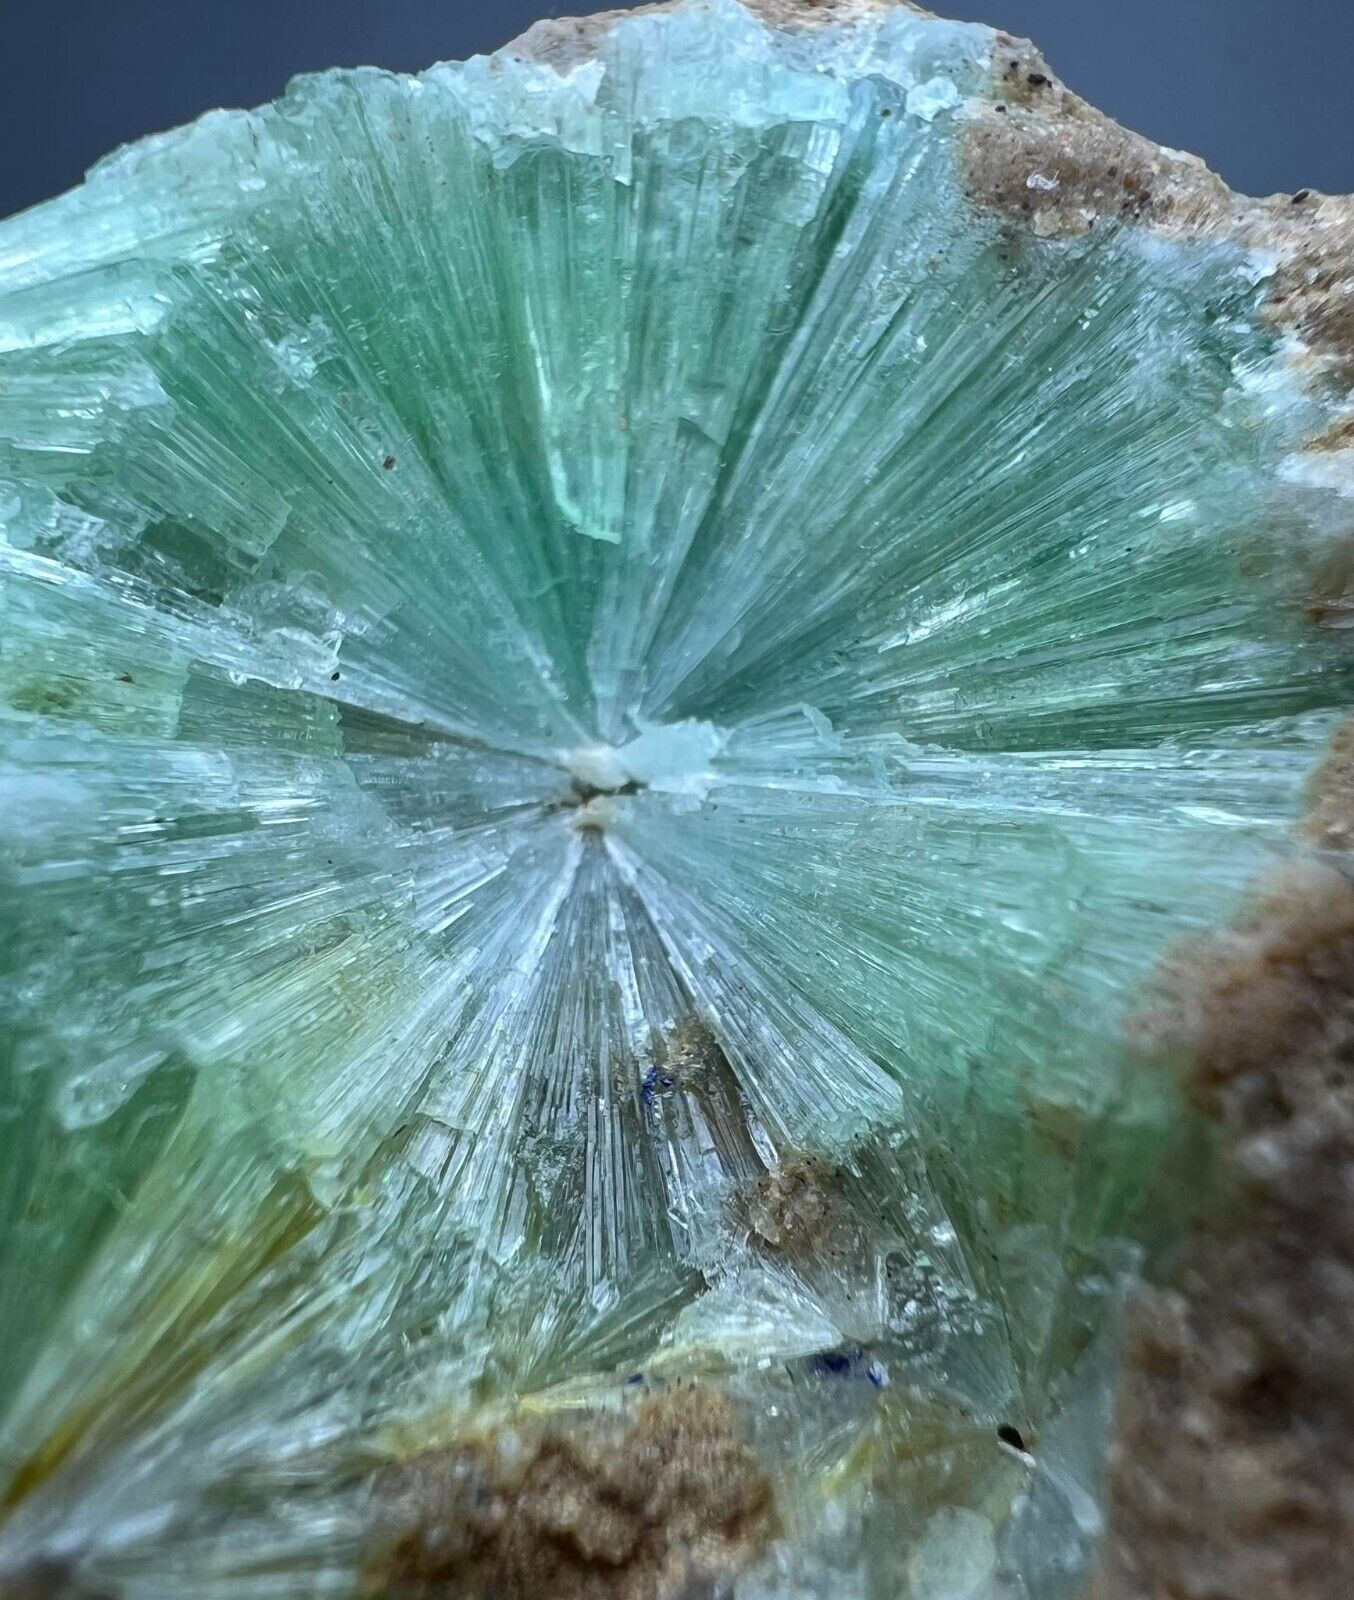 504 Gram Unusual  Flower Shape Aragonite Crystals Specimen @Afg